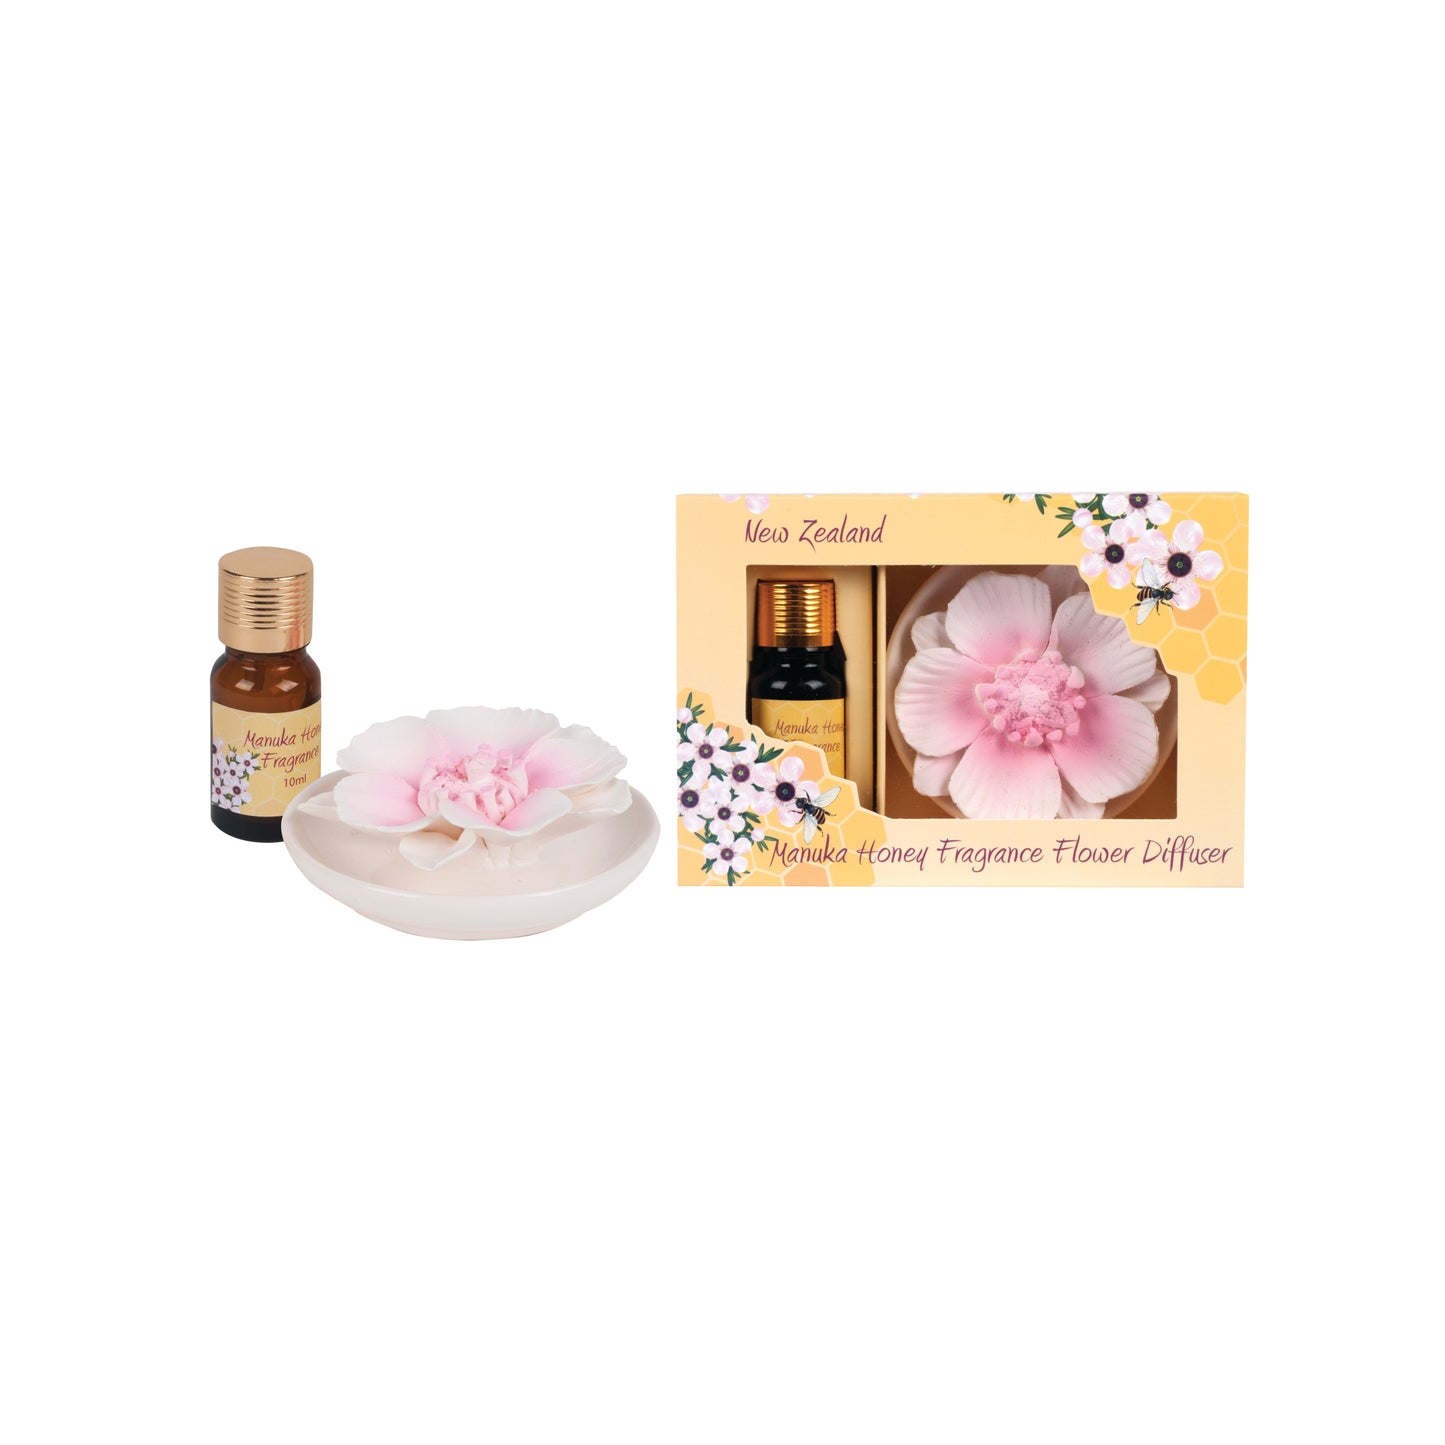 MHFD - Manuka Honey Fragrance Flower